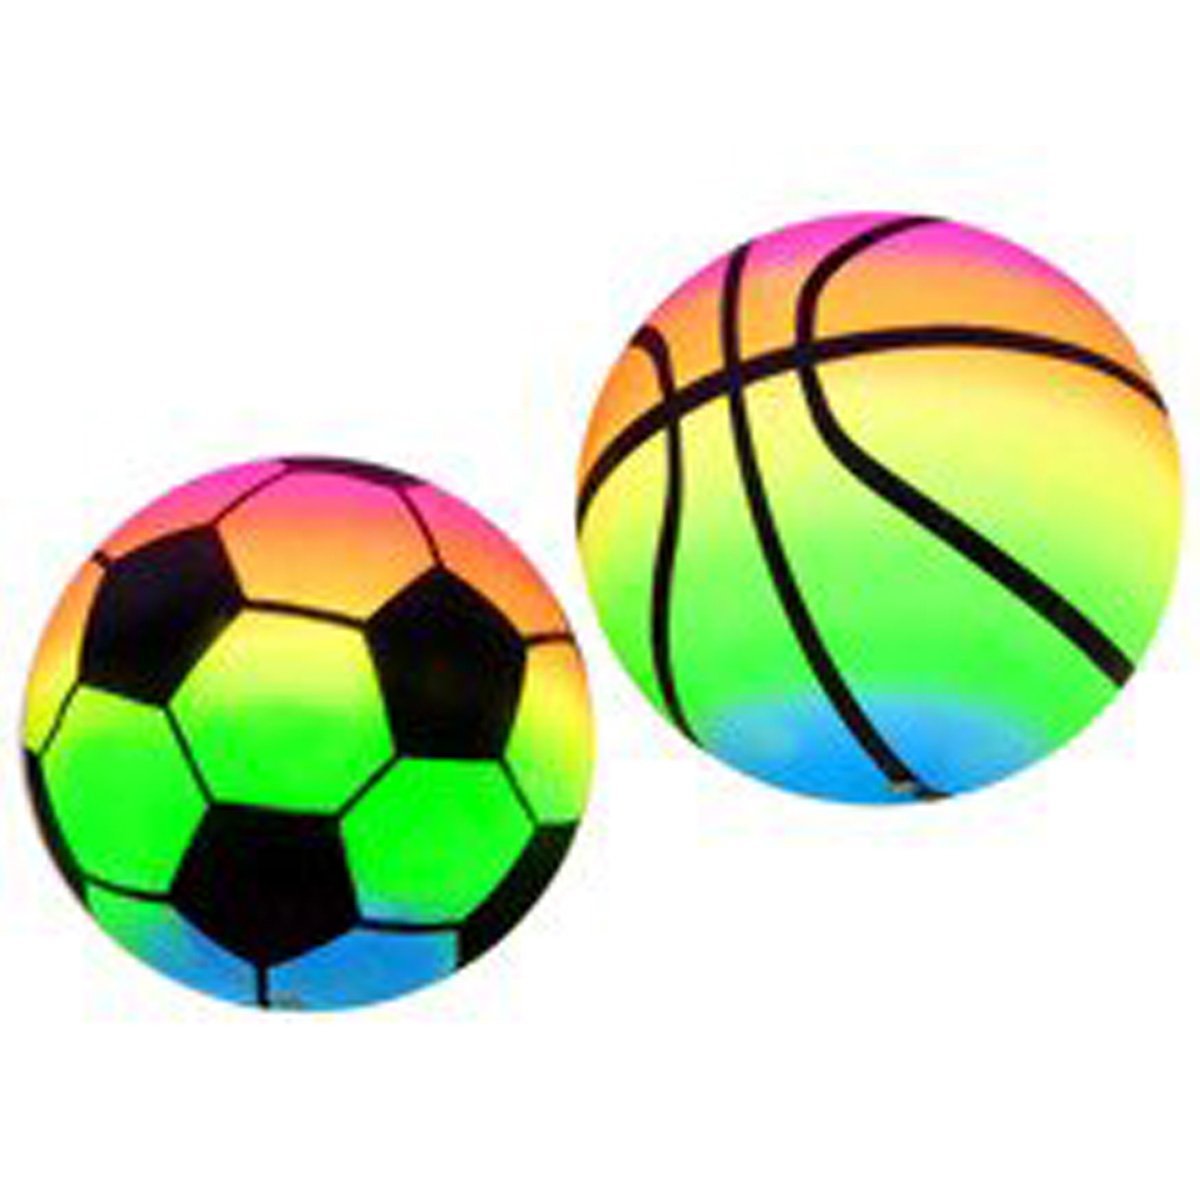 Мяч для ребенка 5 лет. Мяч разноцветный. Мячики для детей. Цветные мячики. Мячи разноцветные для детей.